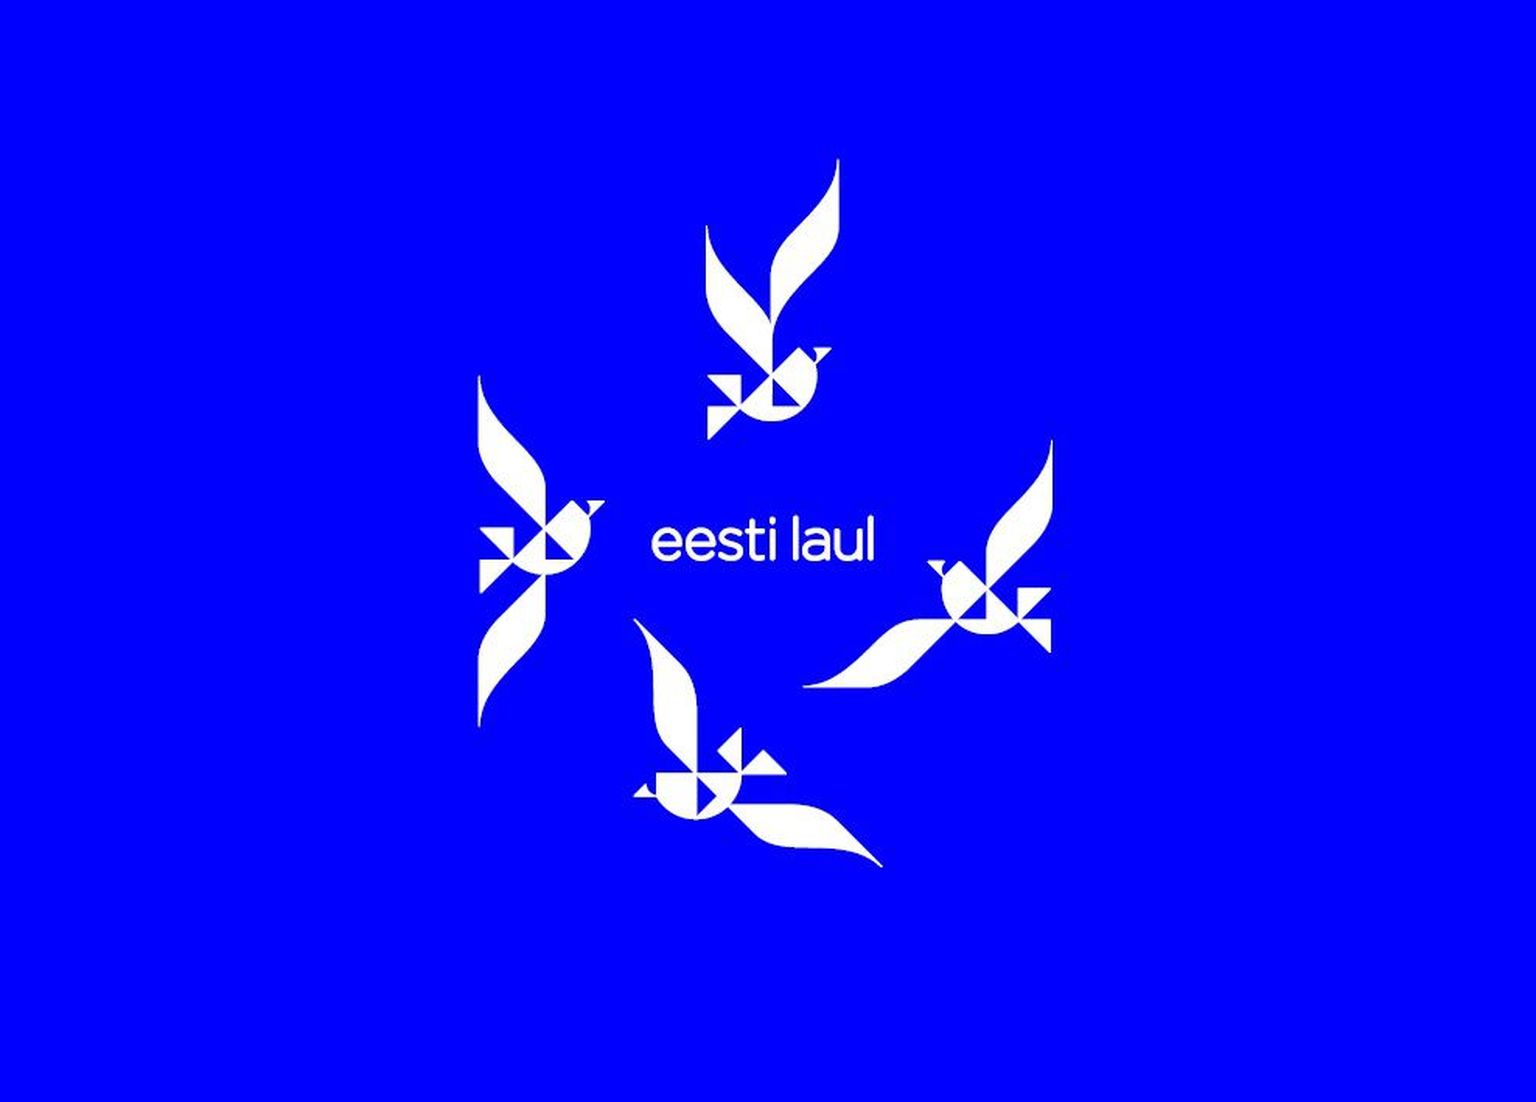 Eesti Laul 2016